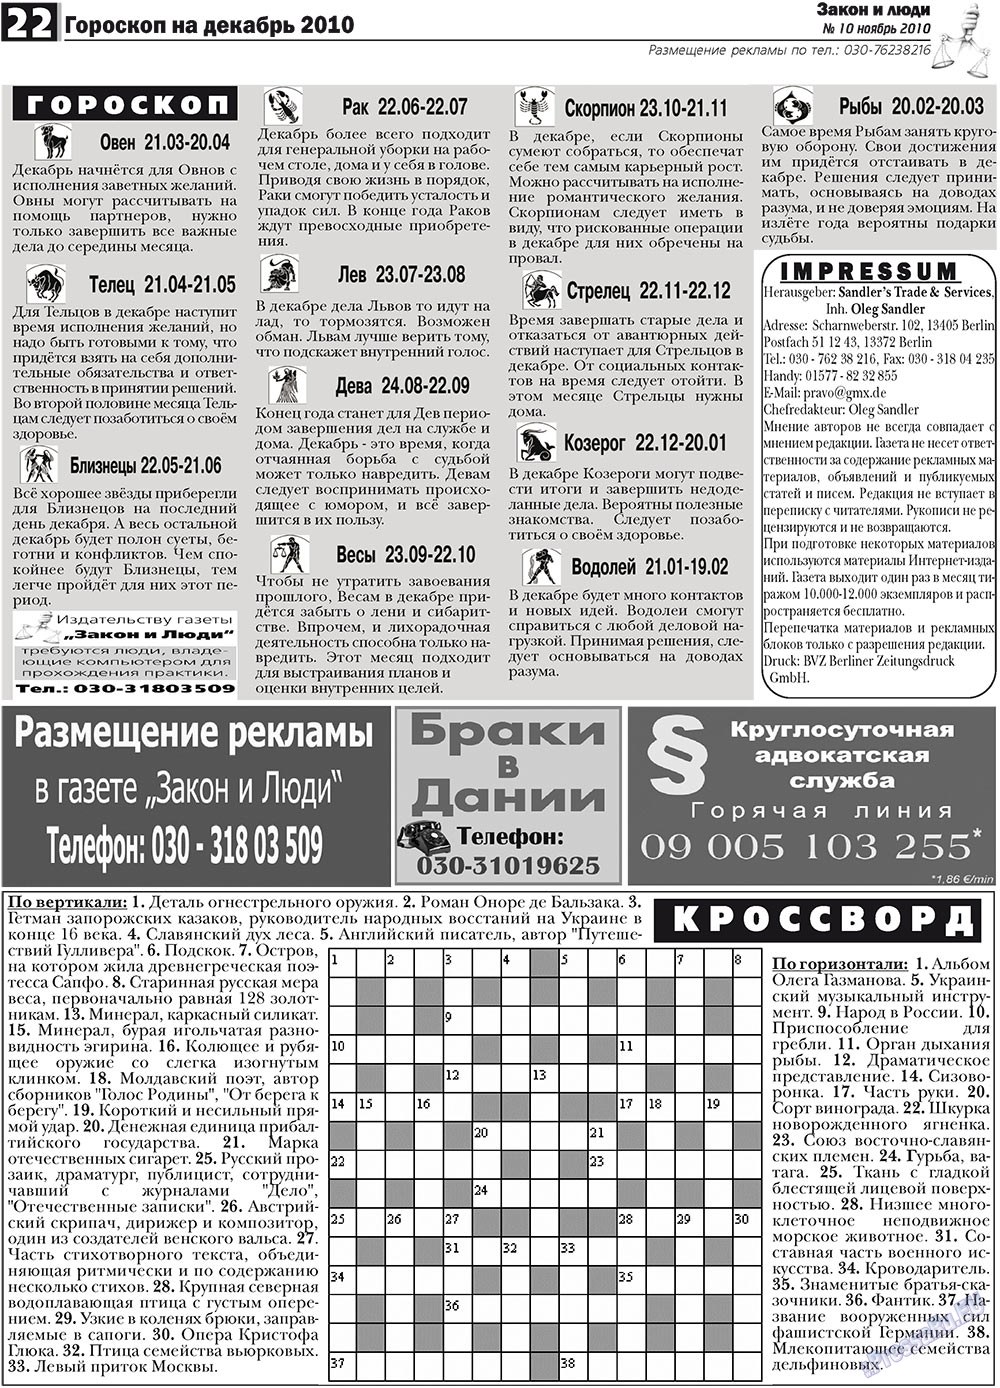 Закон и люди, газета. 2010 №10 стр.22